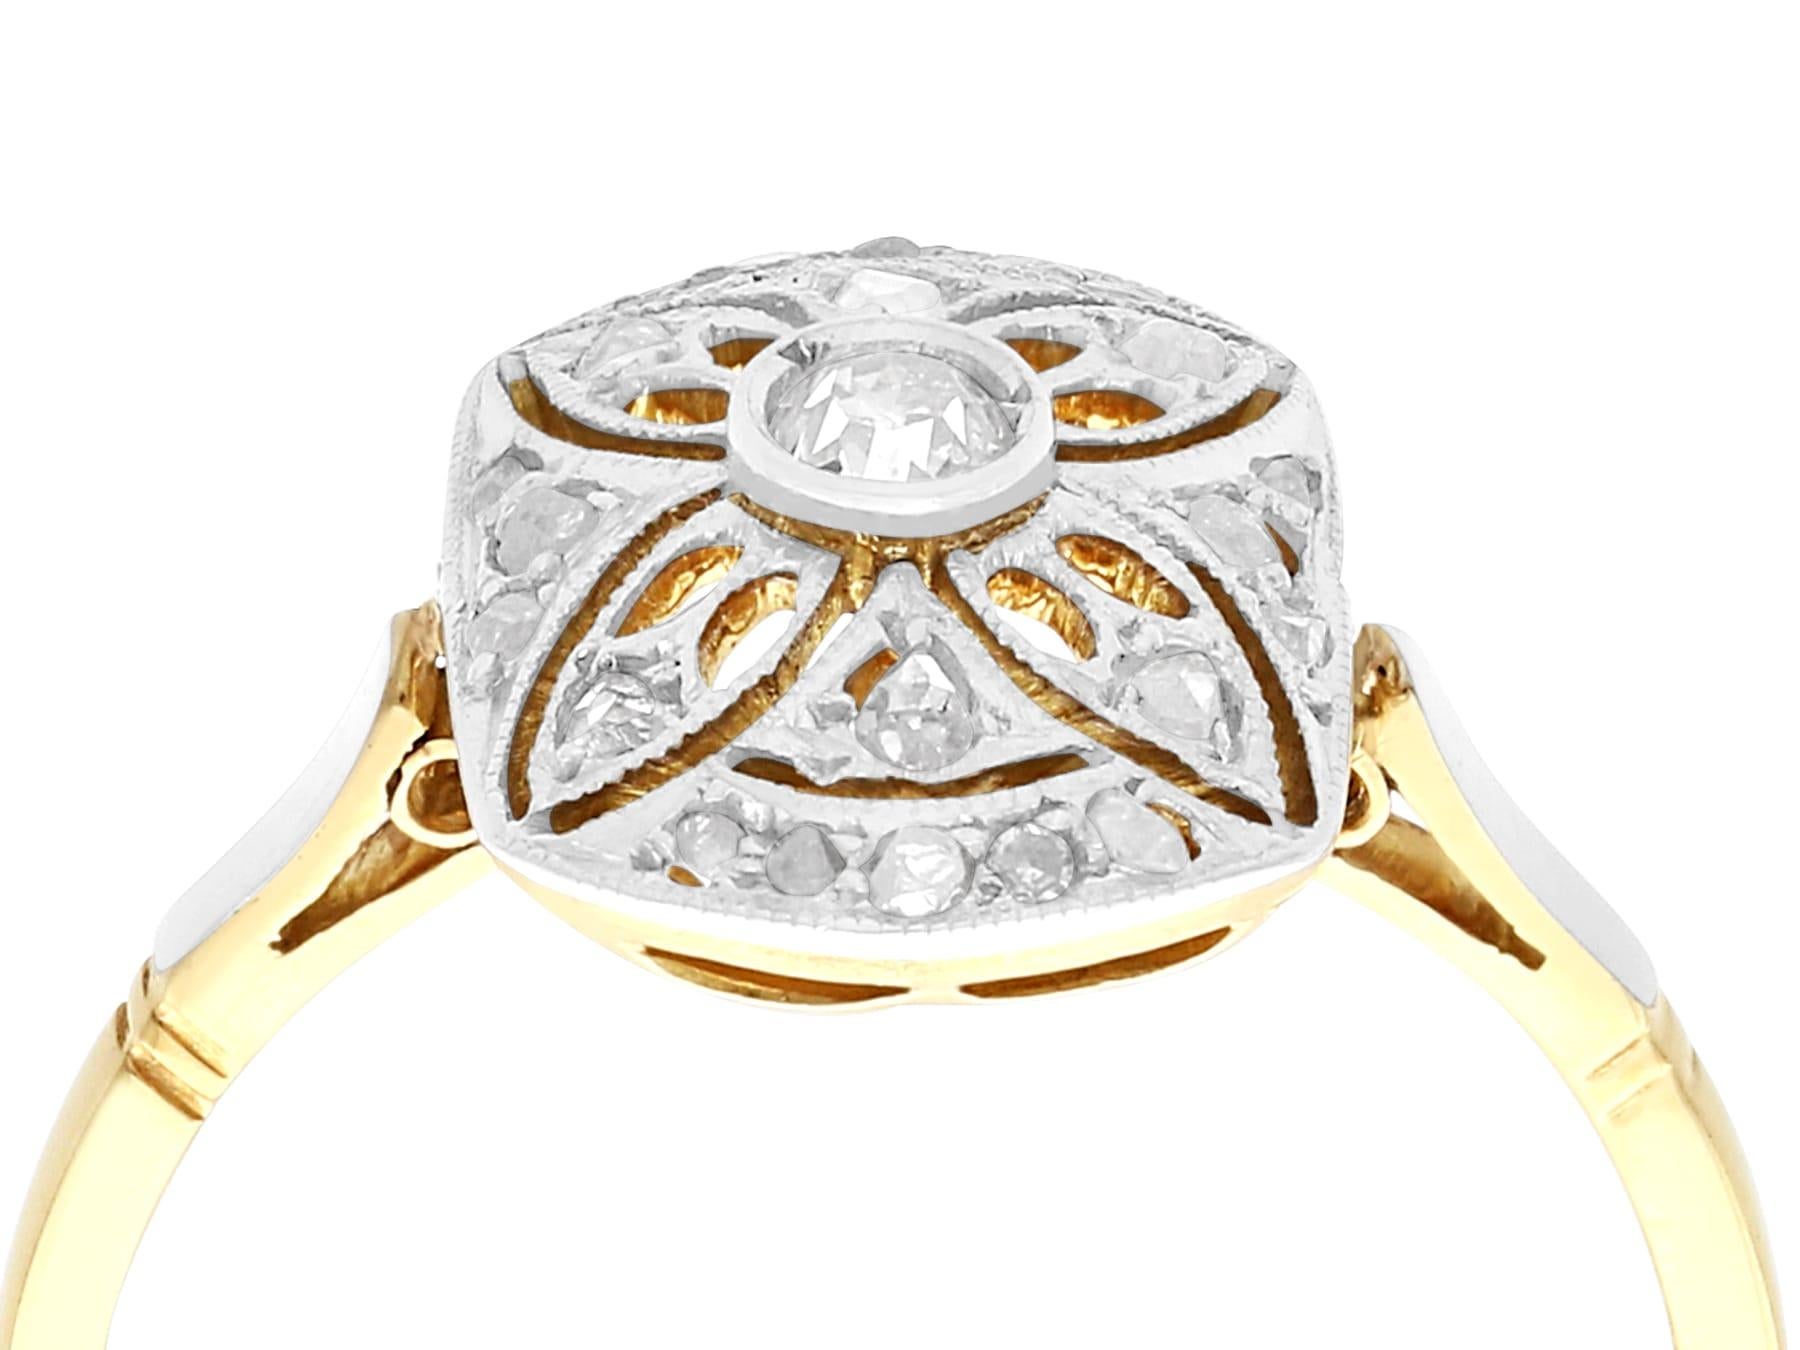 Eine beeindruckende antike 1930's Art Deco 0,25 Karat Diamant und 18 Karat Gelbgold, Platin gesetzt Kleid Ring; Teil unserer vielfältigen antiken estate jewelry Sammlungen.

Dieser feine und beeindruckende Art-Déco-Diamantring wurde in 18 Karat